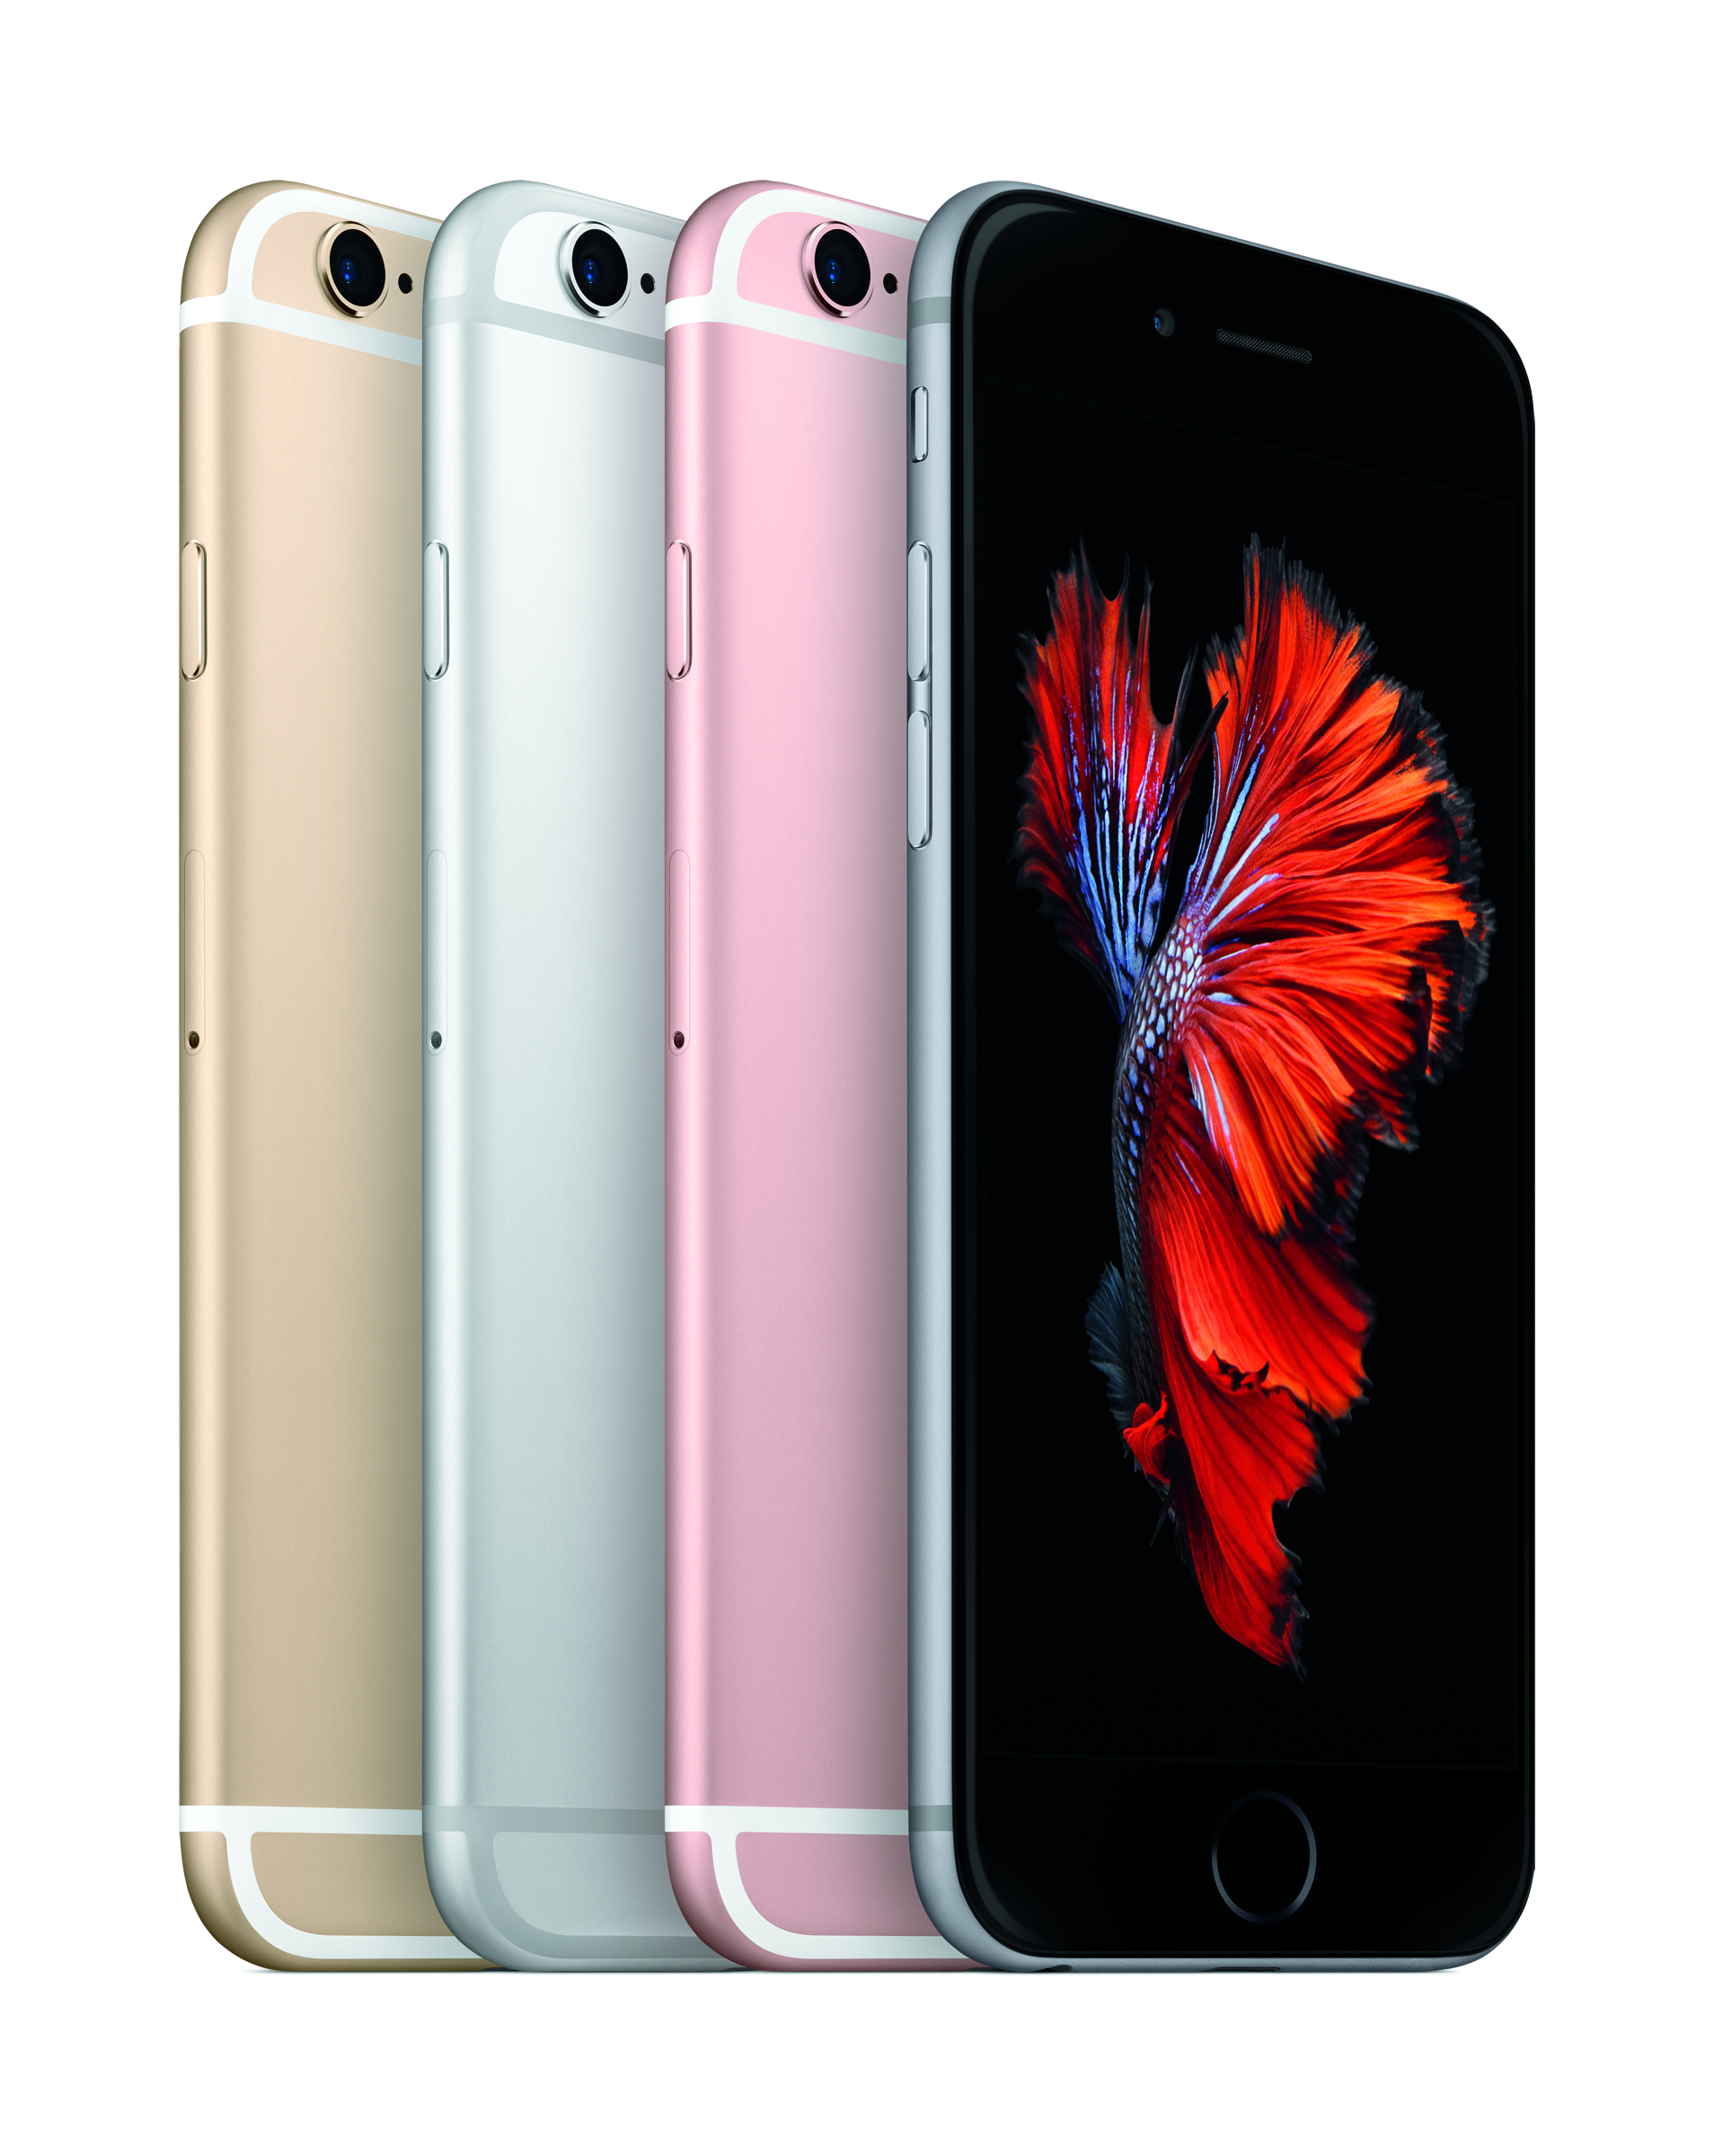 iPhone 6s Preiskracher: 32 GB Variante bei mobilcom-debitel für 559,99 Euro